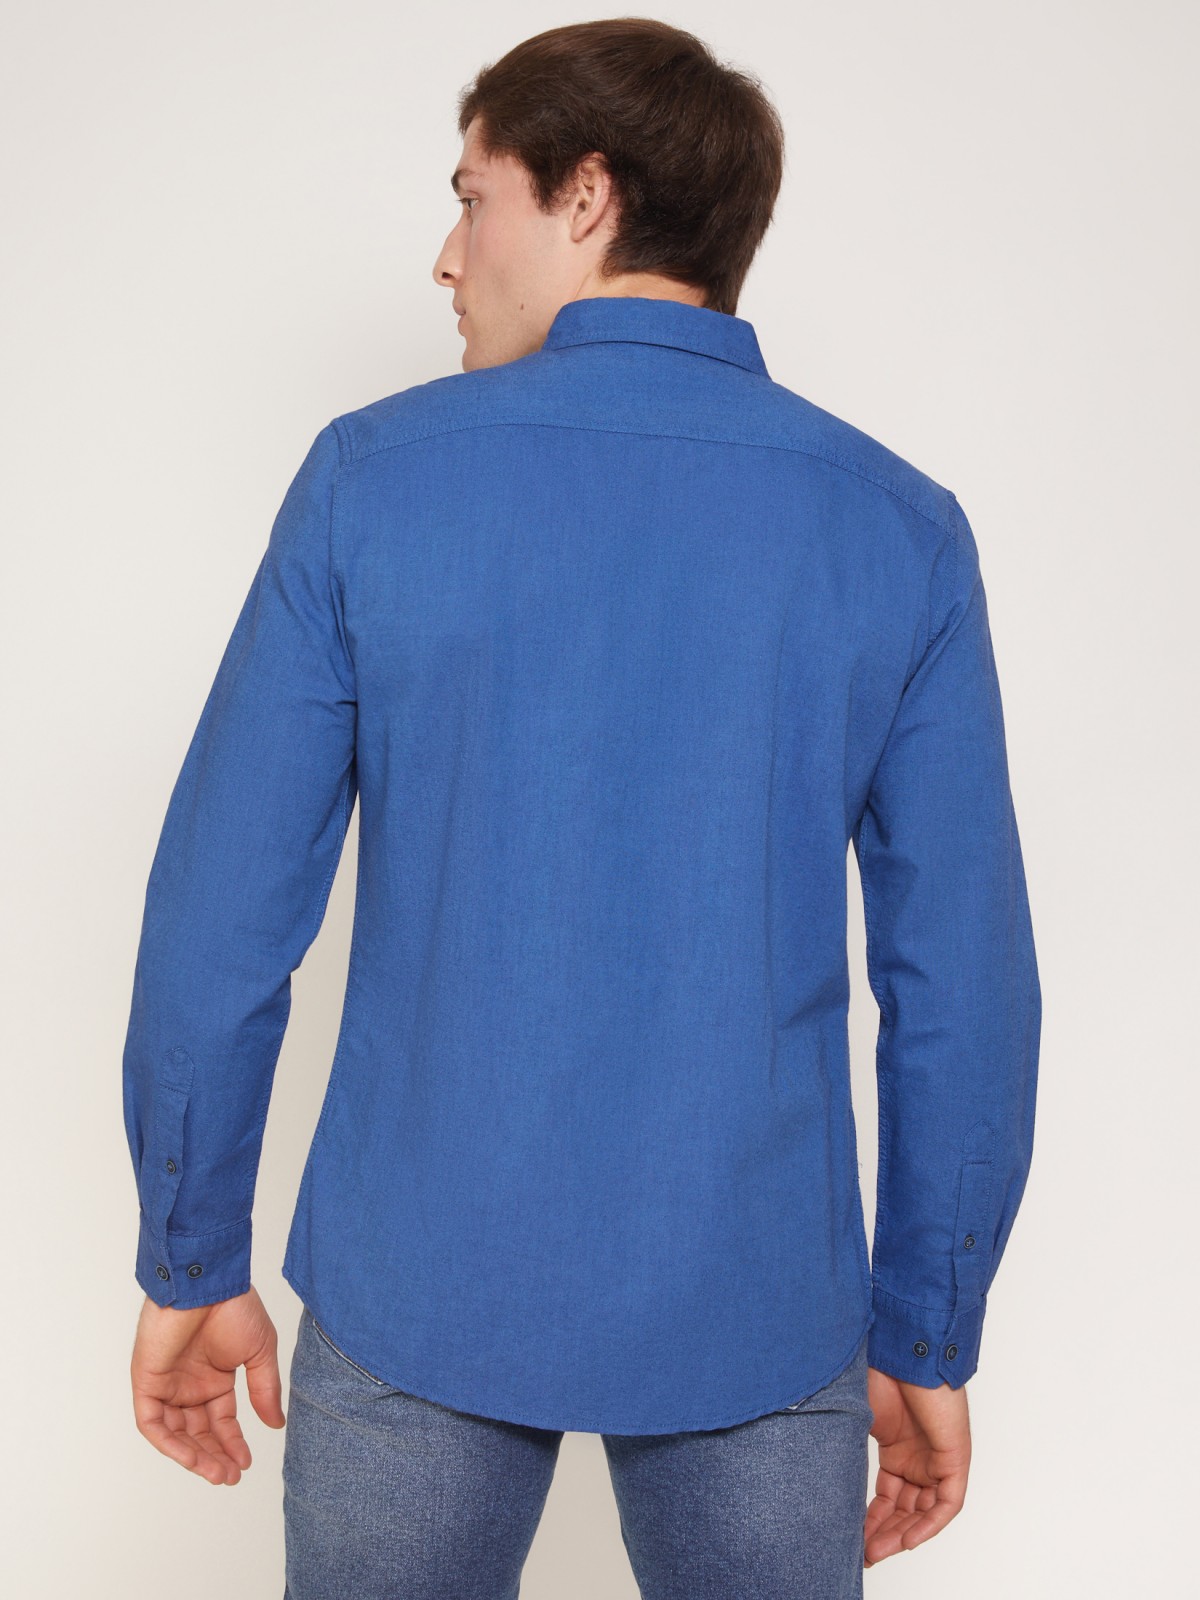 Хлопковая рубашка полуприлегающего силуэта zolla 011312191023, цвет голубой, размер S - фото 6